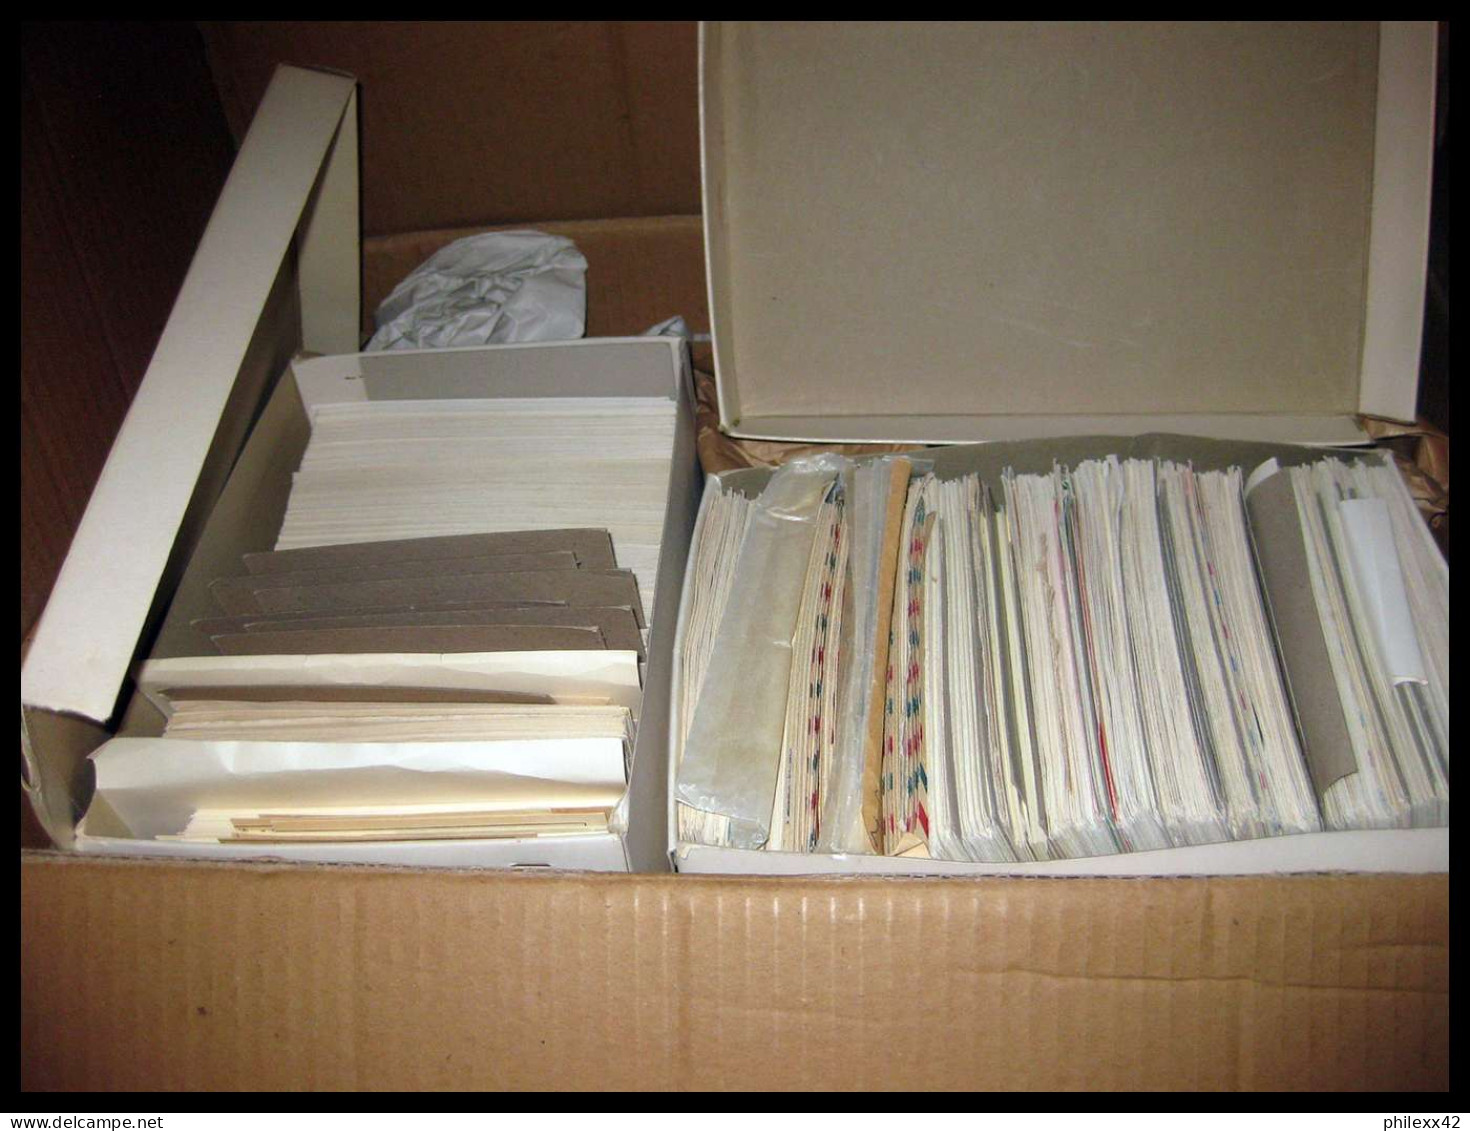 Enorme stock de lettres espace cosmos space covers 16 gros cartons 40000 enveloppes !!!!